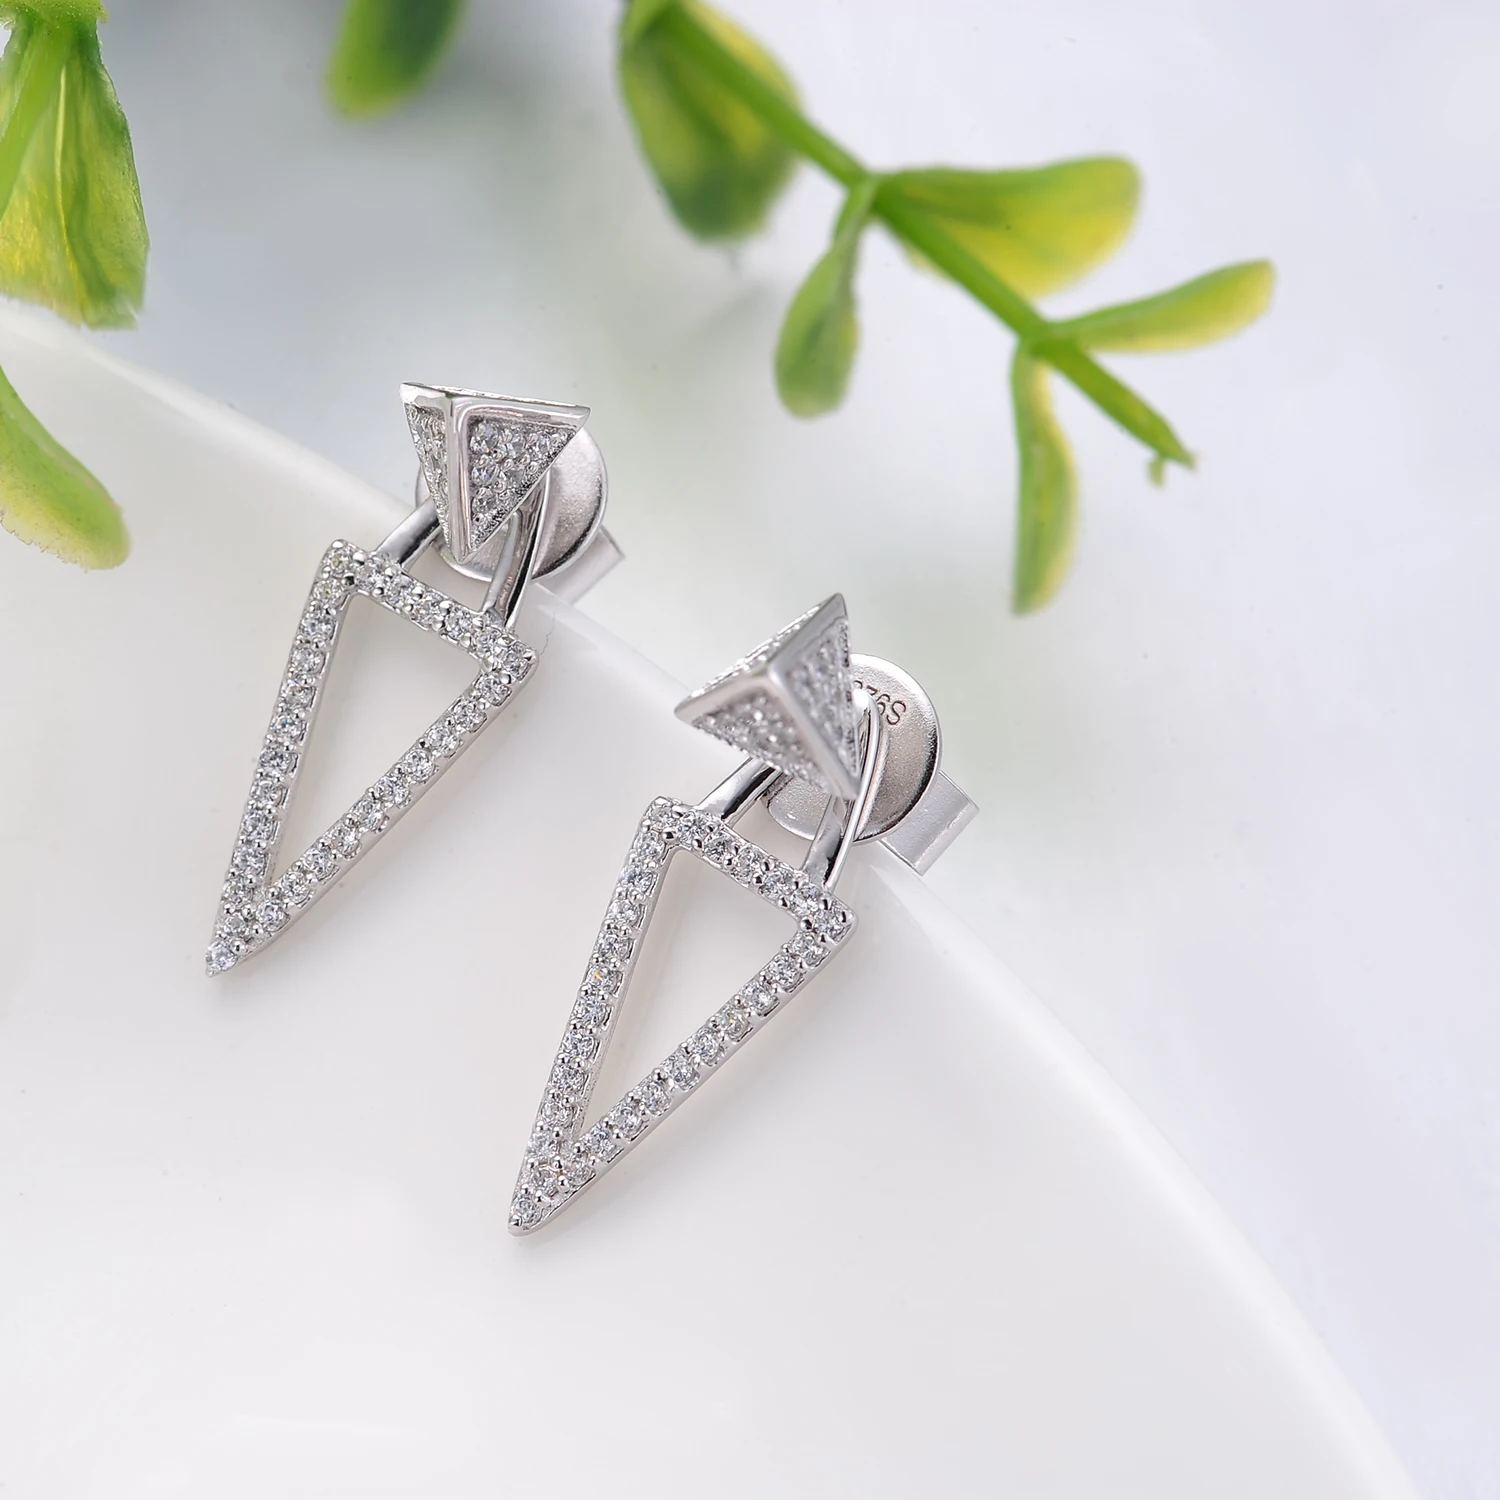 Luxury Jewelry Earring 925 Sterling Silver Women Fashionable CZ Triangle Stud Earring(图5)